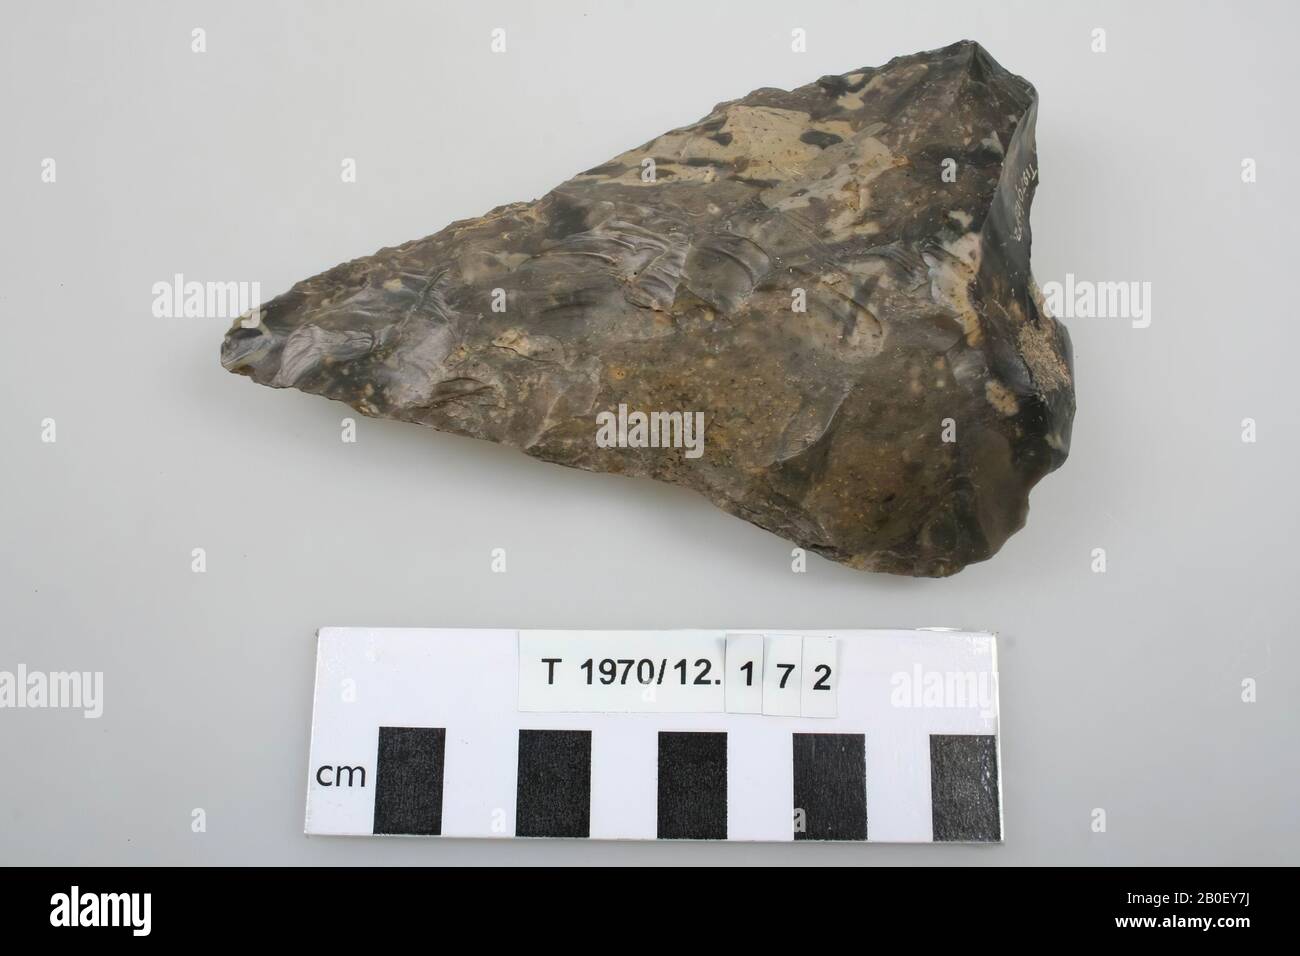 Herramienta Flint, herramienta, piedra, Flint, 12.5 x 7.8 x 3 cm, prehistoria, Inglaterra, desconocido, desconocido, Swanscombe Foto de stock